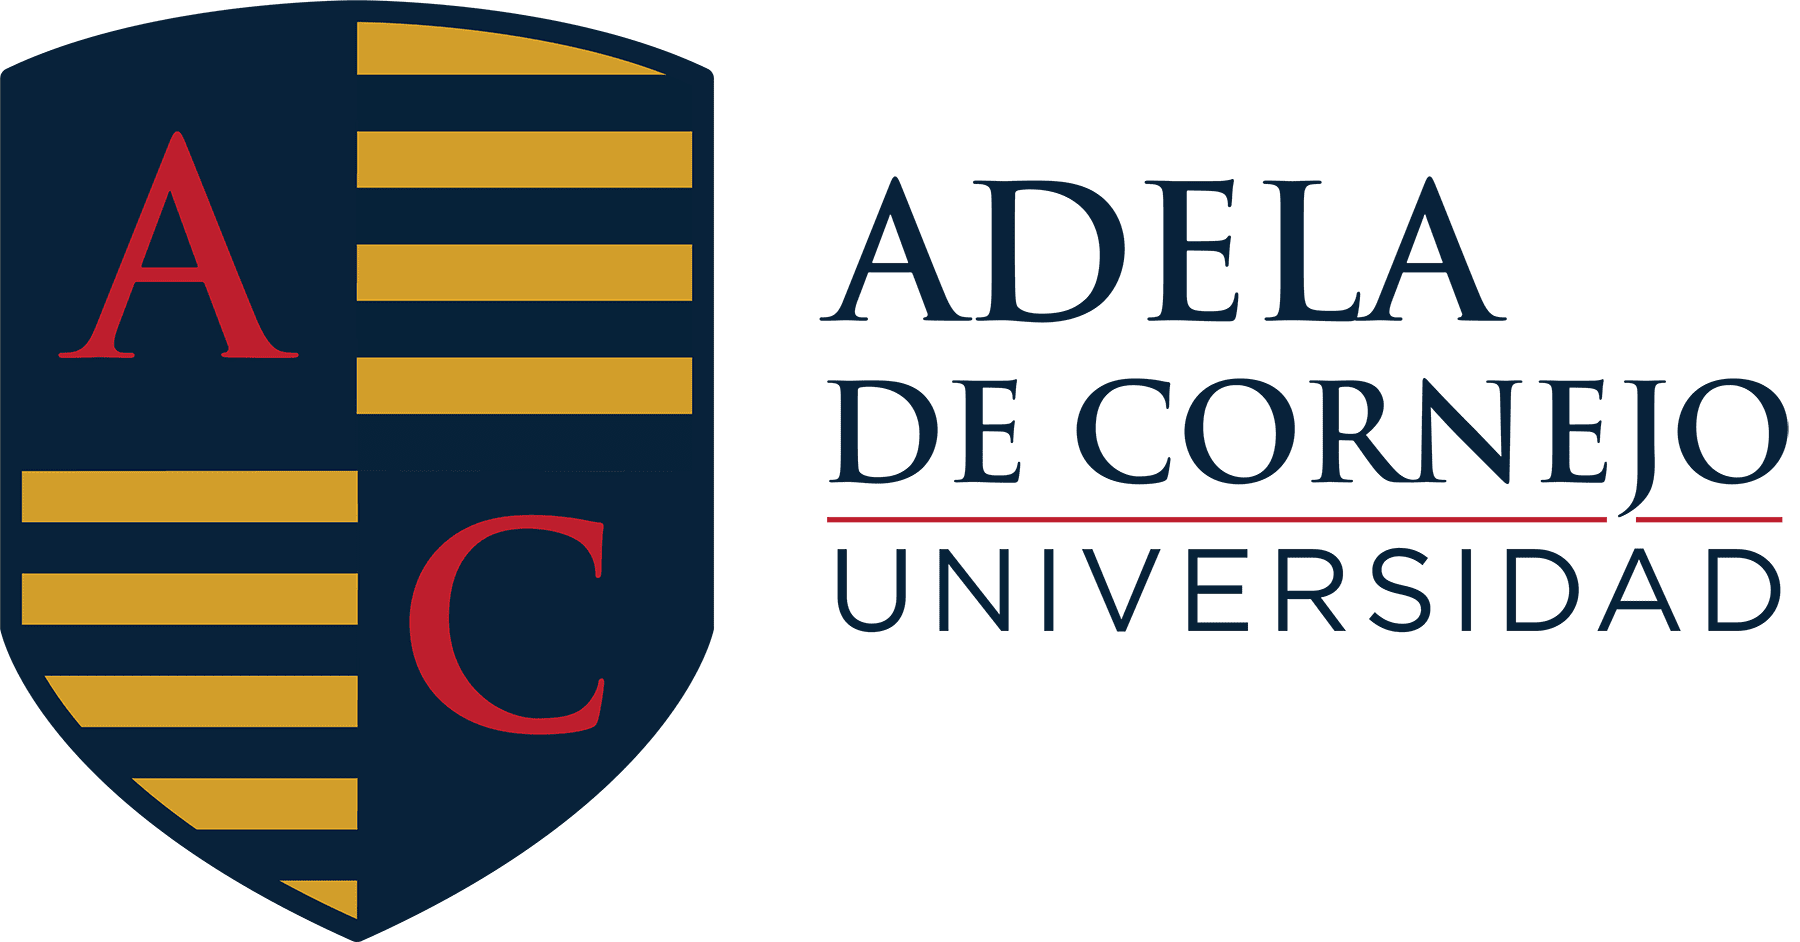 Logo Universidad Adela de Cornejo